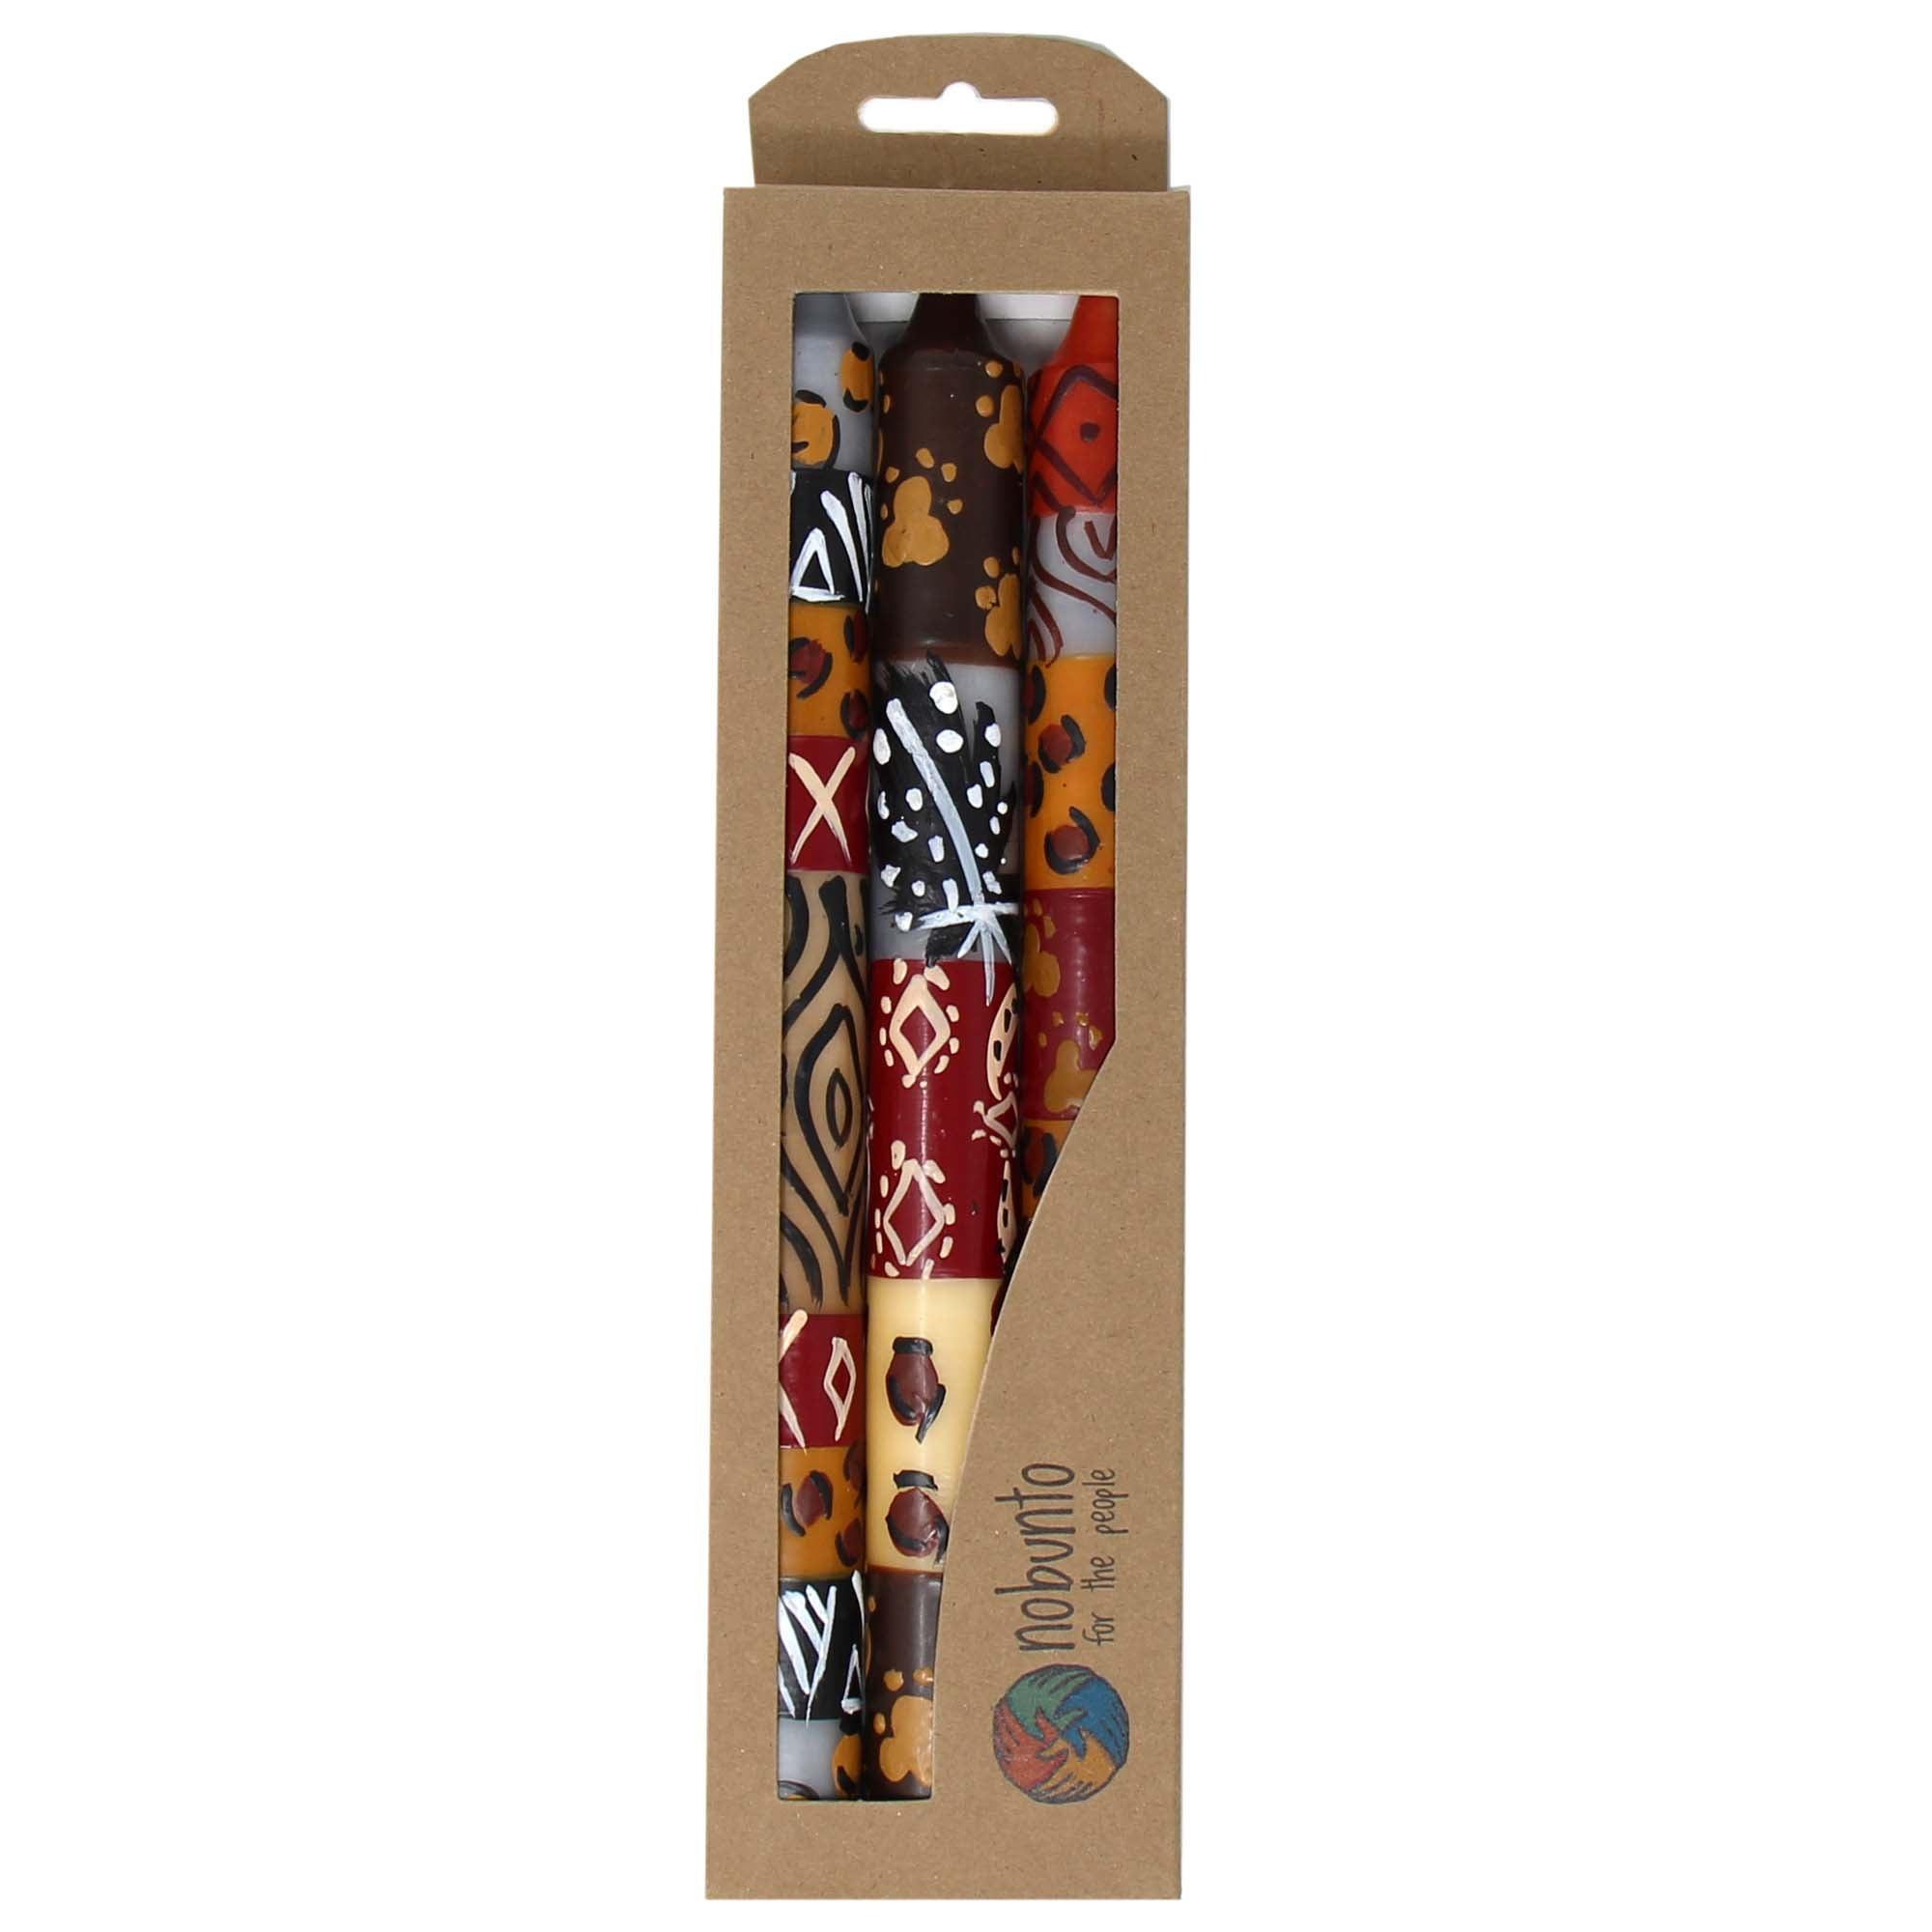 Set of Three Boxed Tall Hand-Painted Candles - Uzima Design - Nobunto - Flyclothing LLC